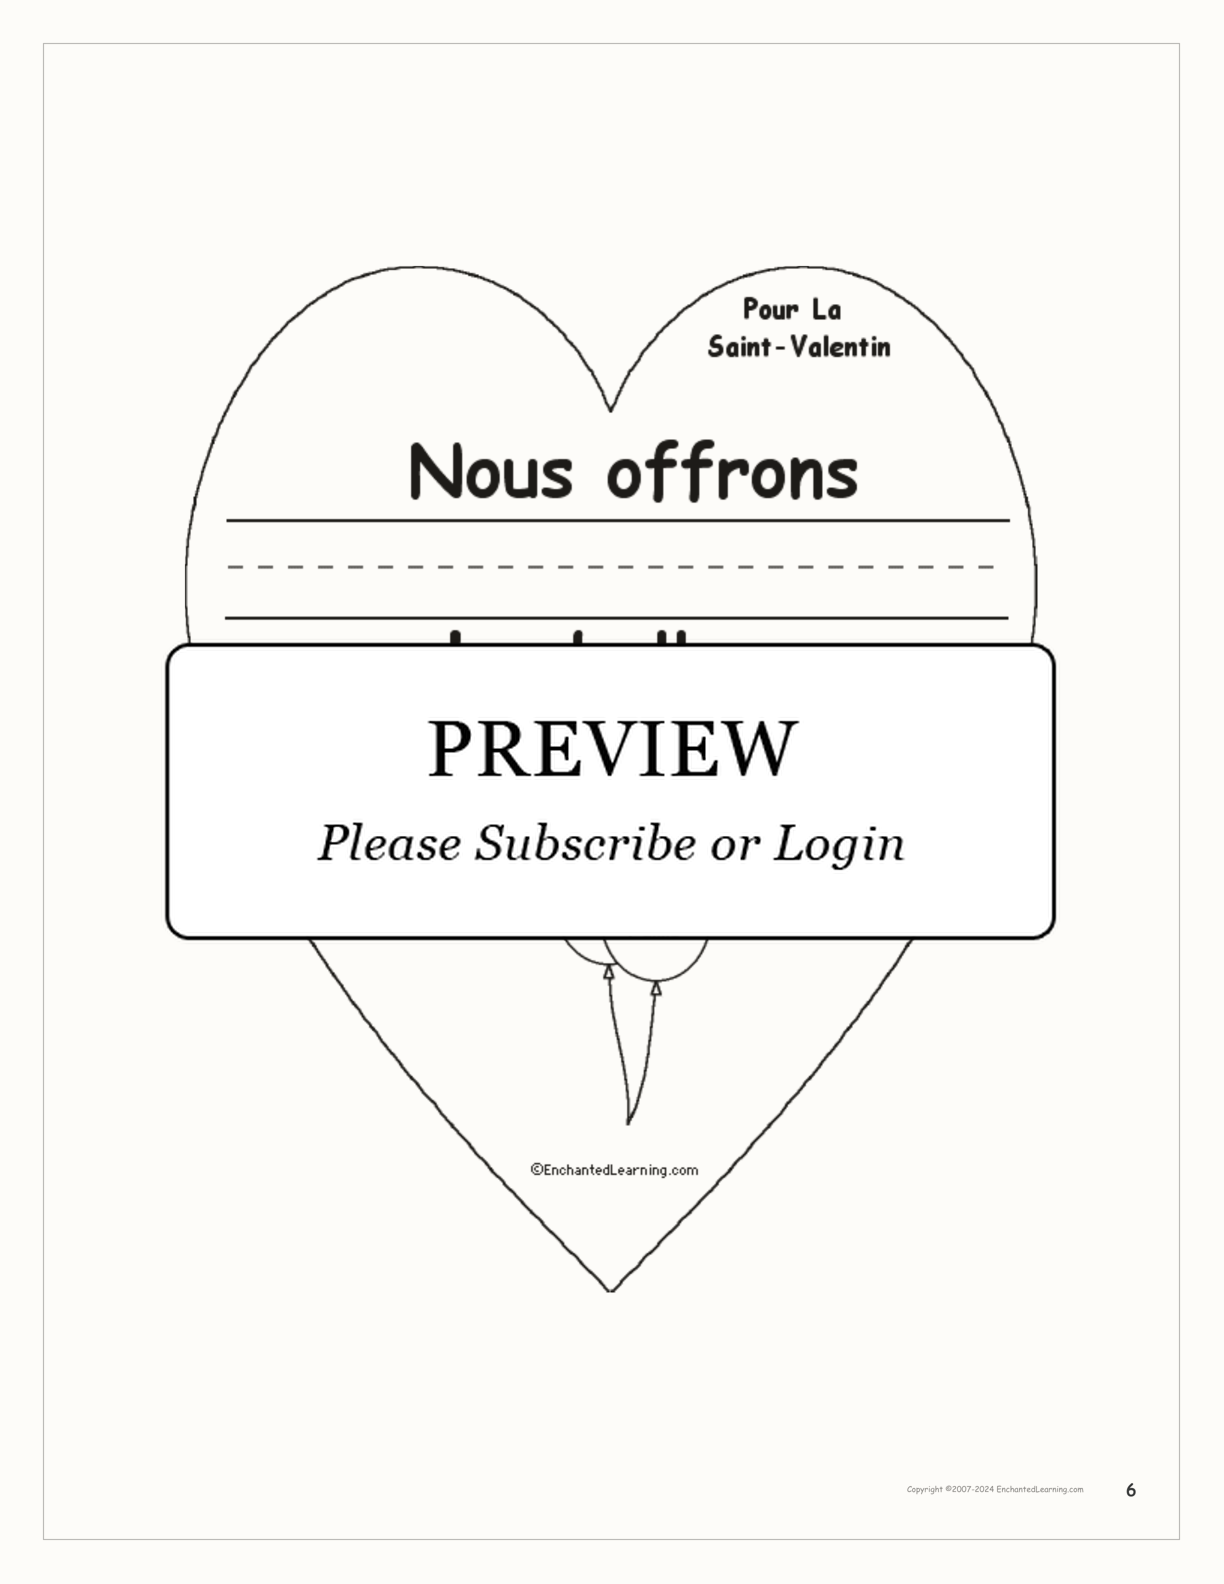 Pour la Saint-Valentin interactive worksheet page 6